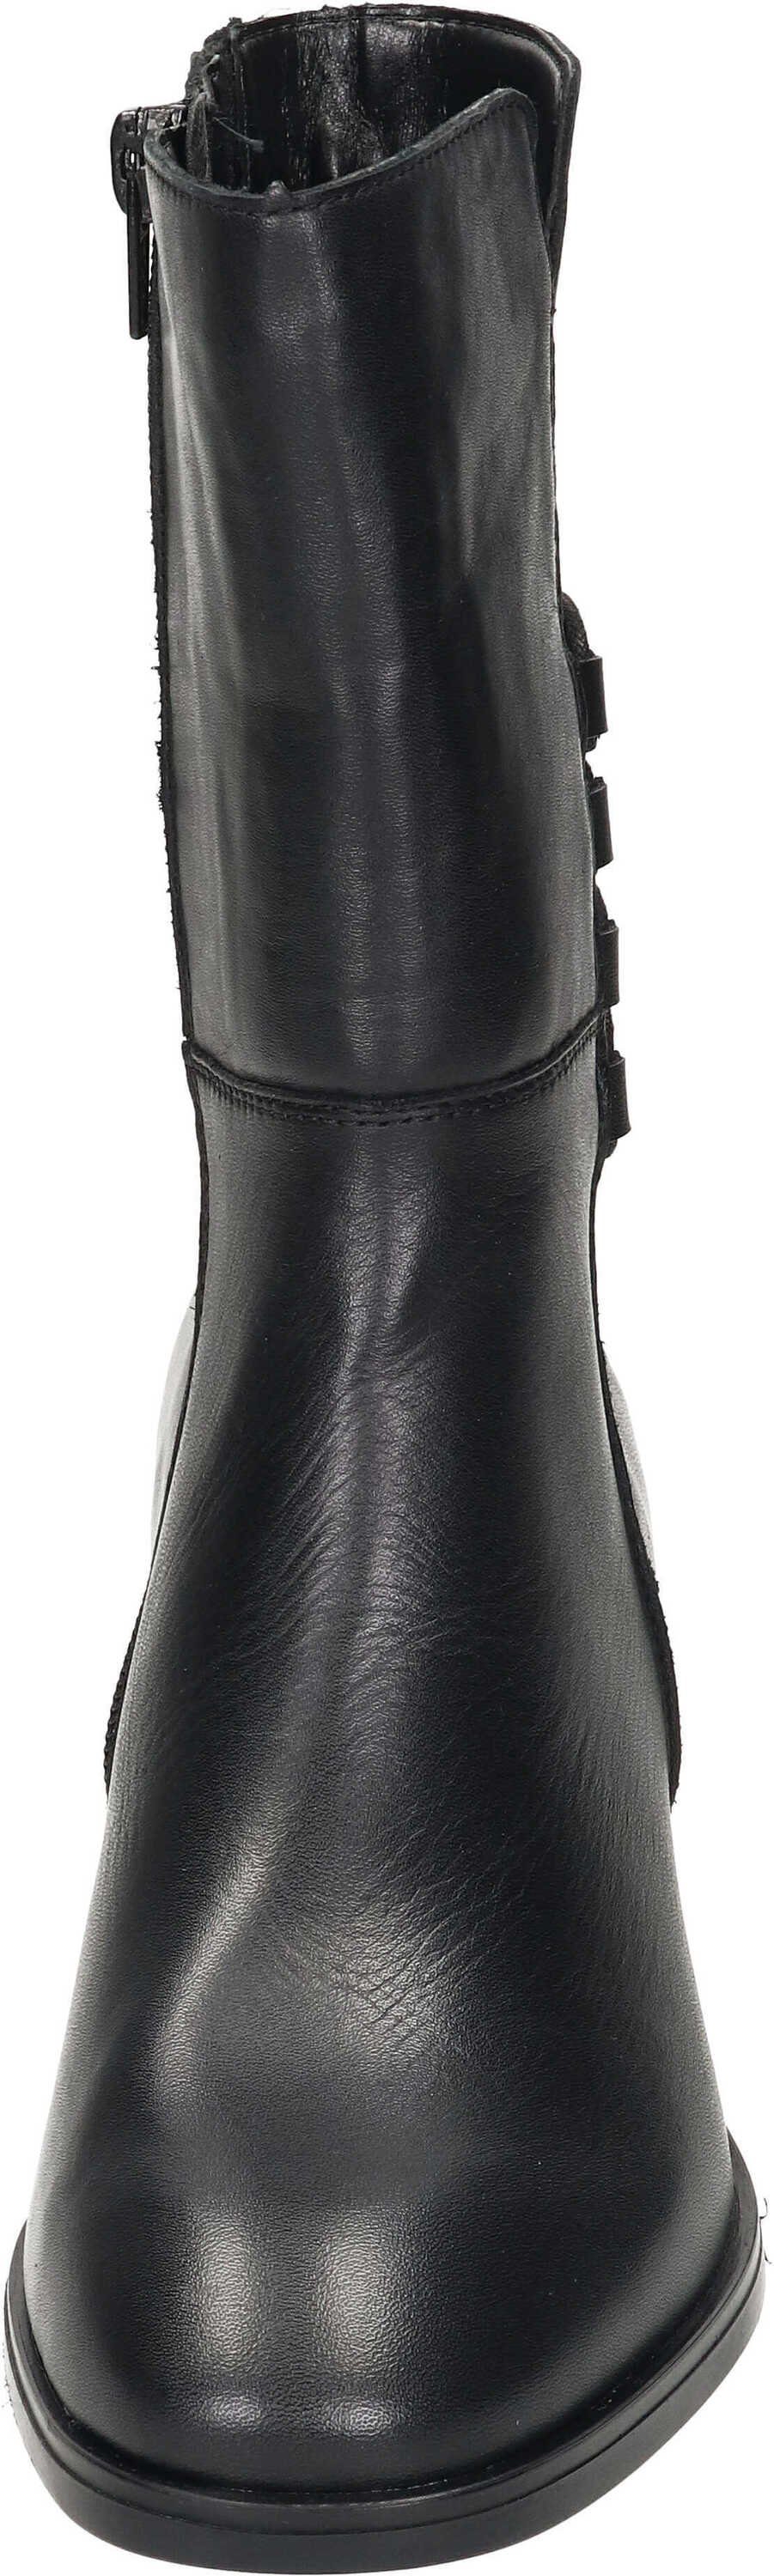 Stiefelette Remonte Leder echtem schwarz aus Stiefeletten